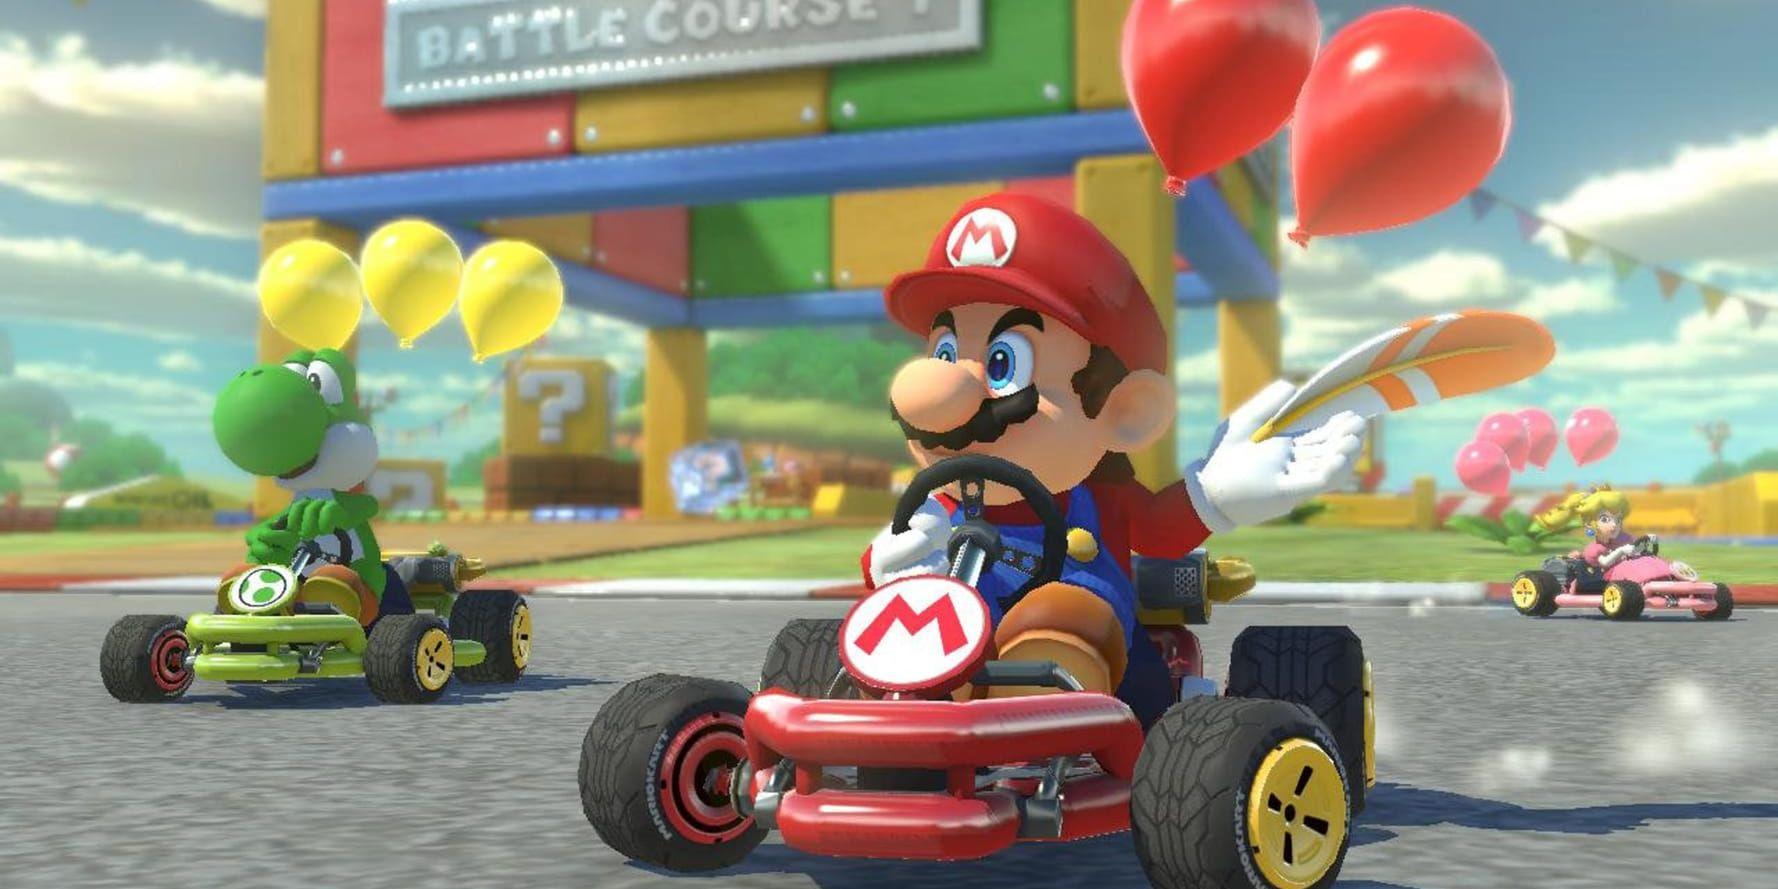 Mario guidar trafikanter på Mario-dagen. Pressbild.